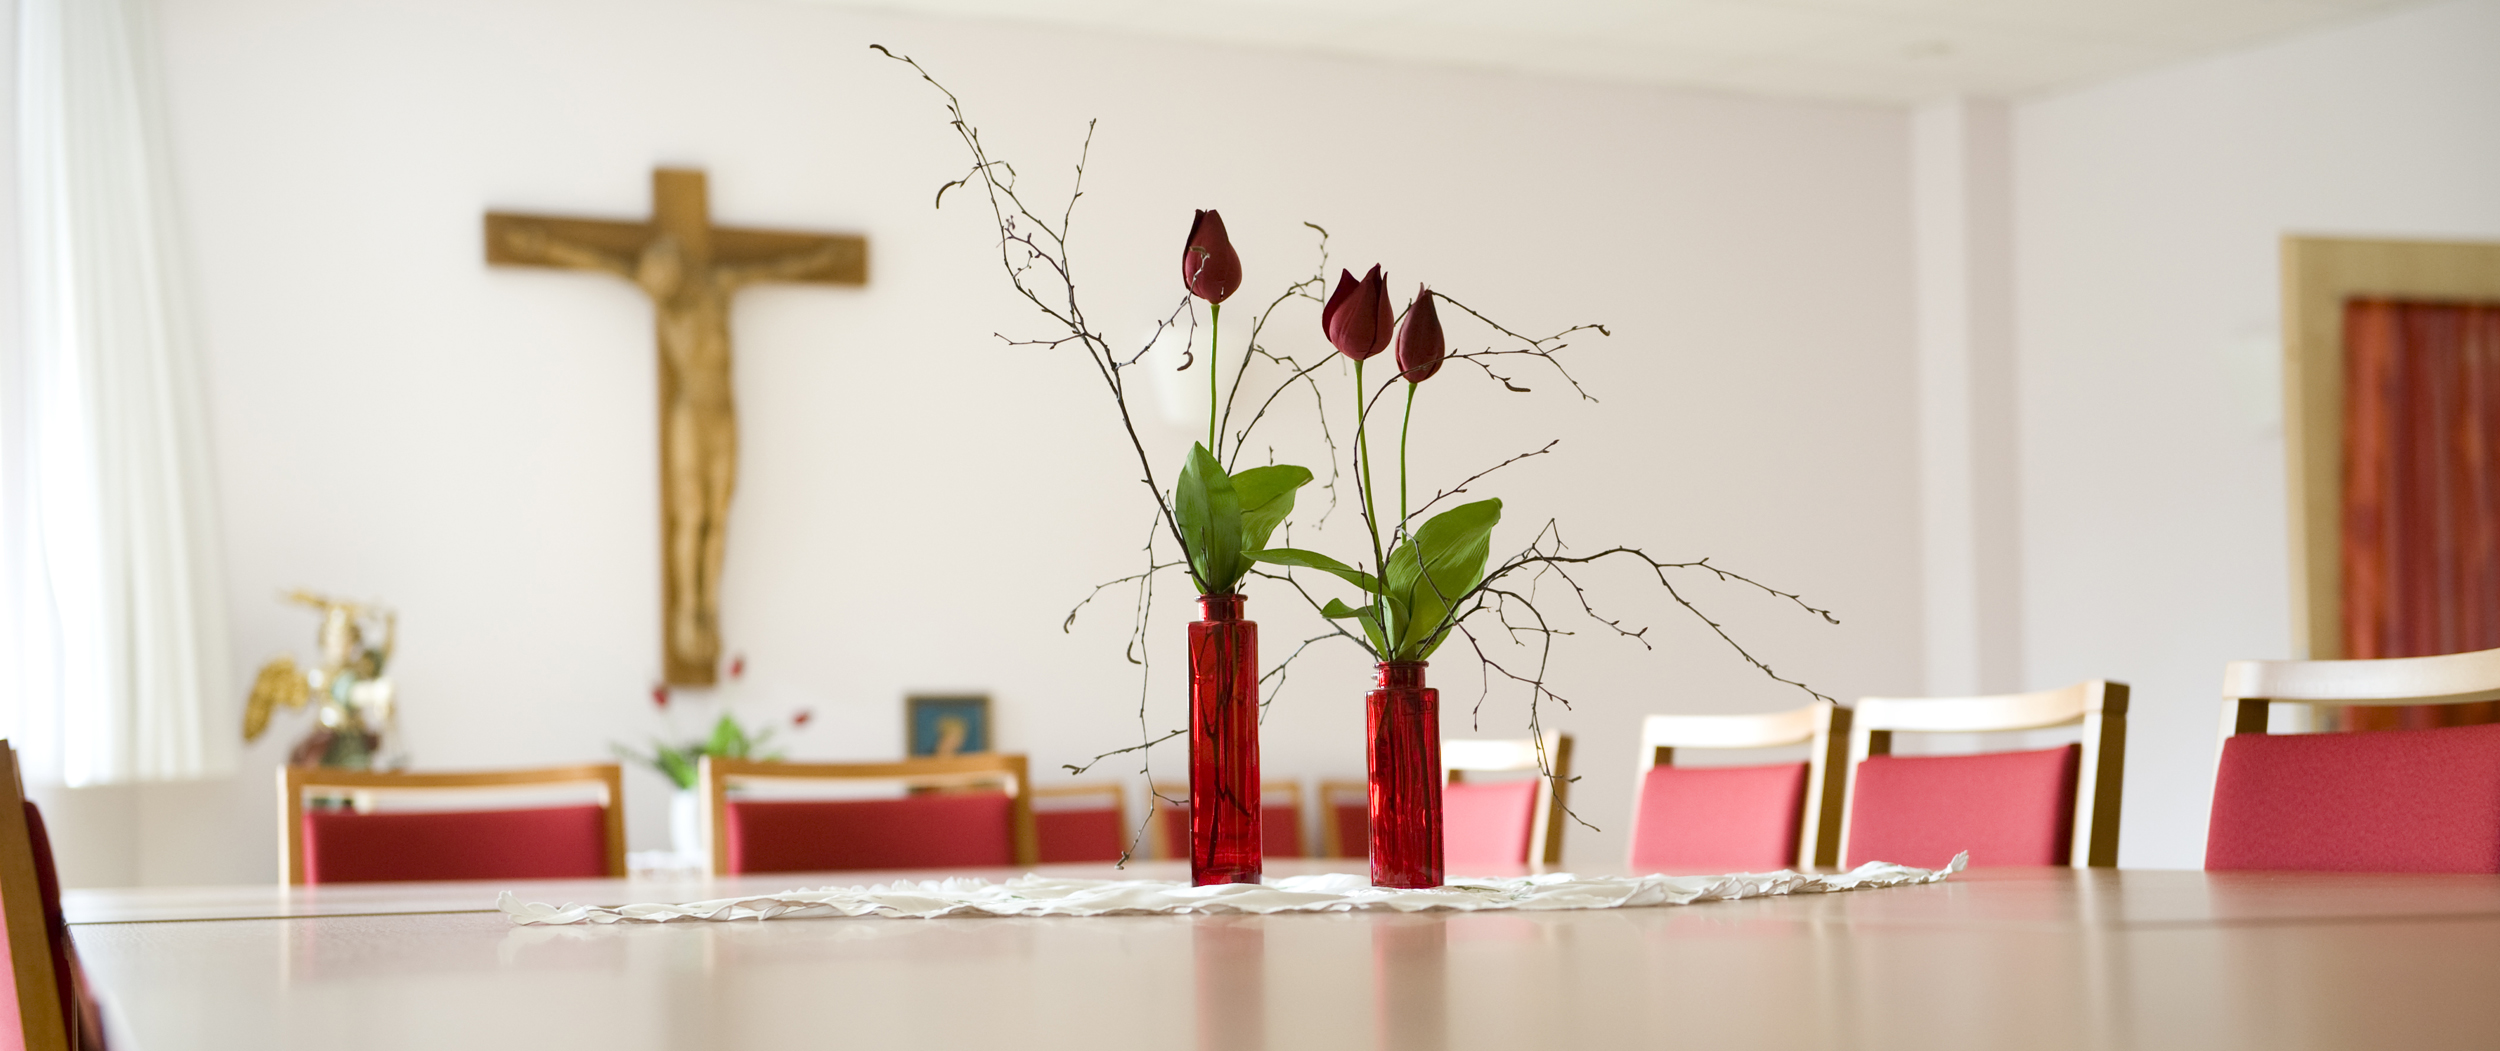 Rosen stehen auf dem Tisch, im Hintergrund hängt ein Kreuz an der Wand.